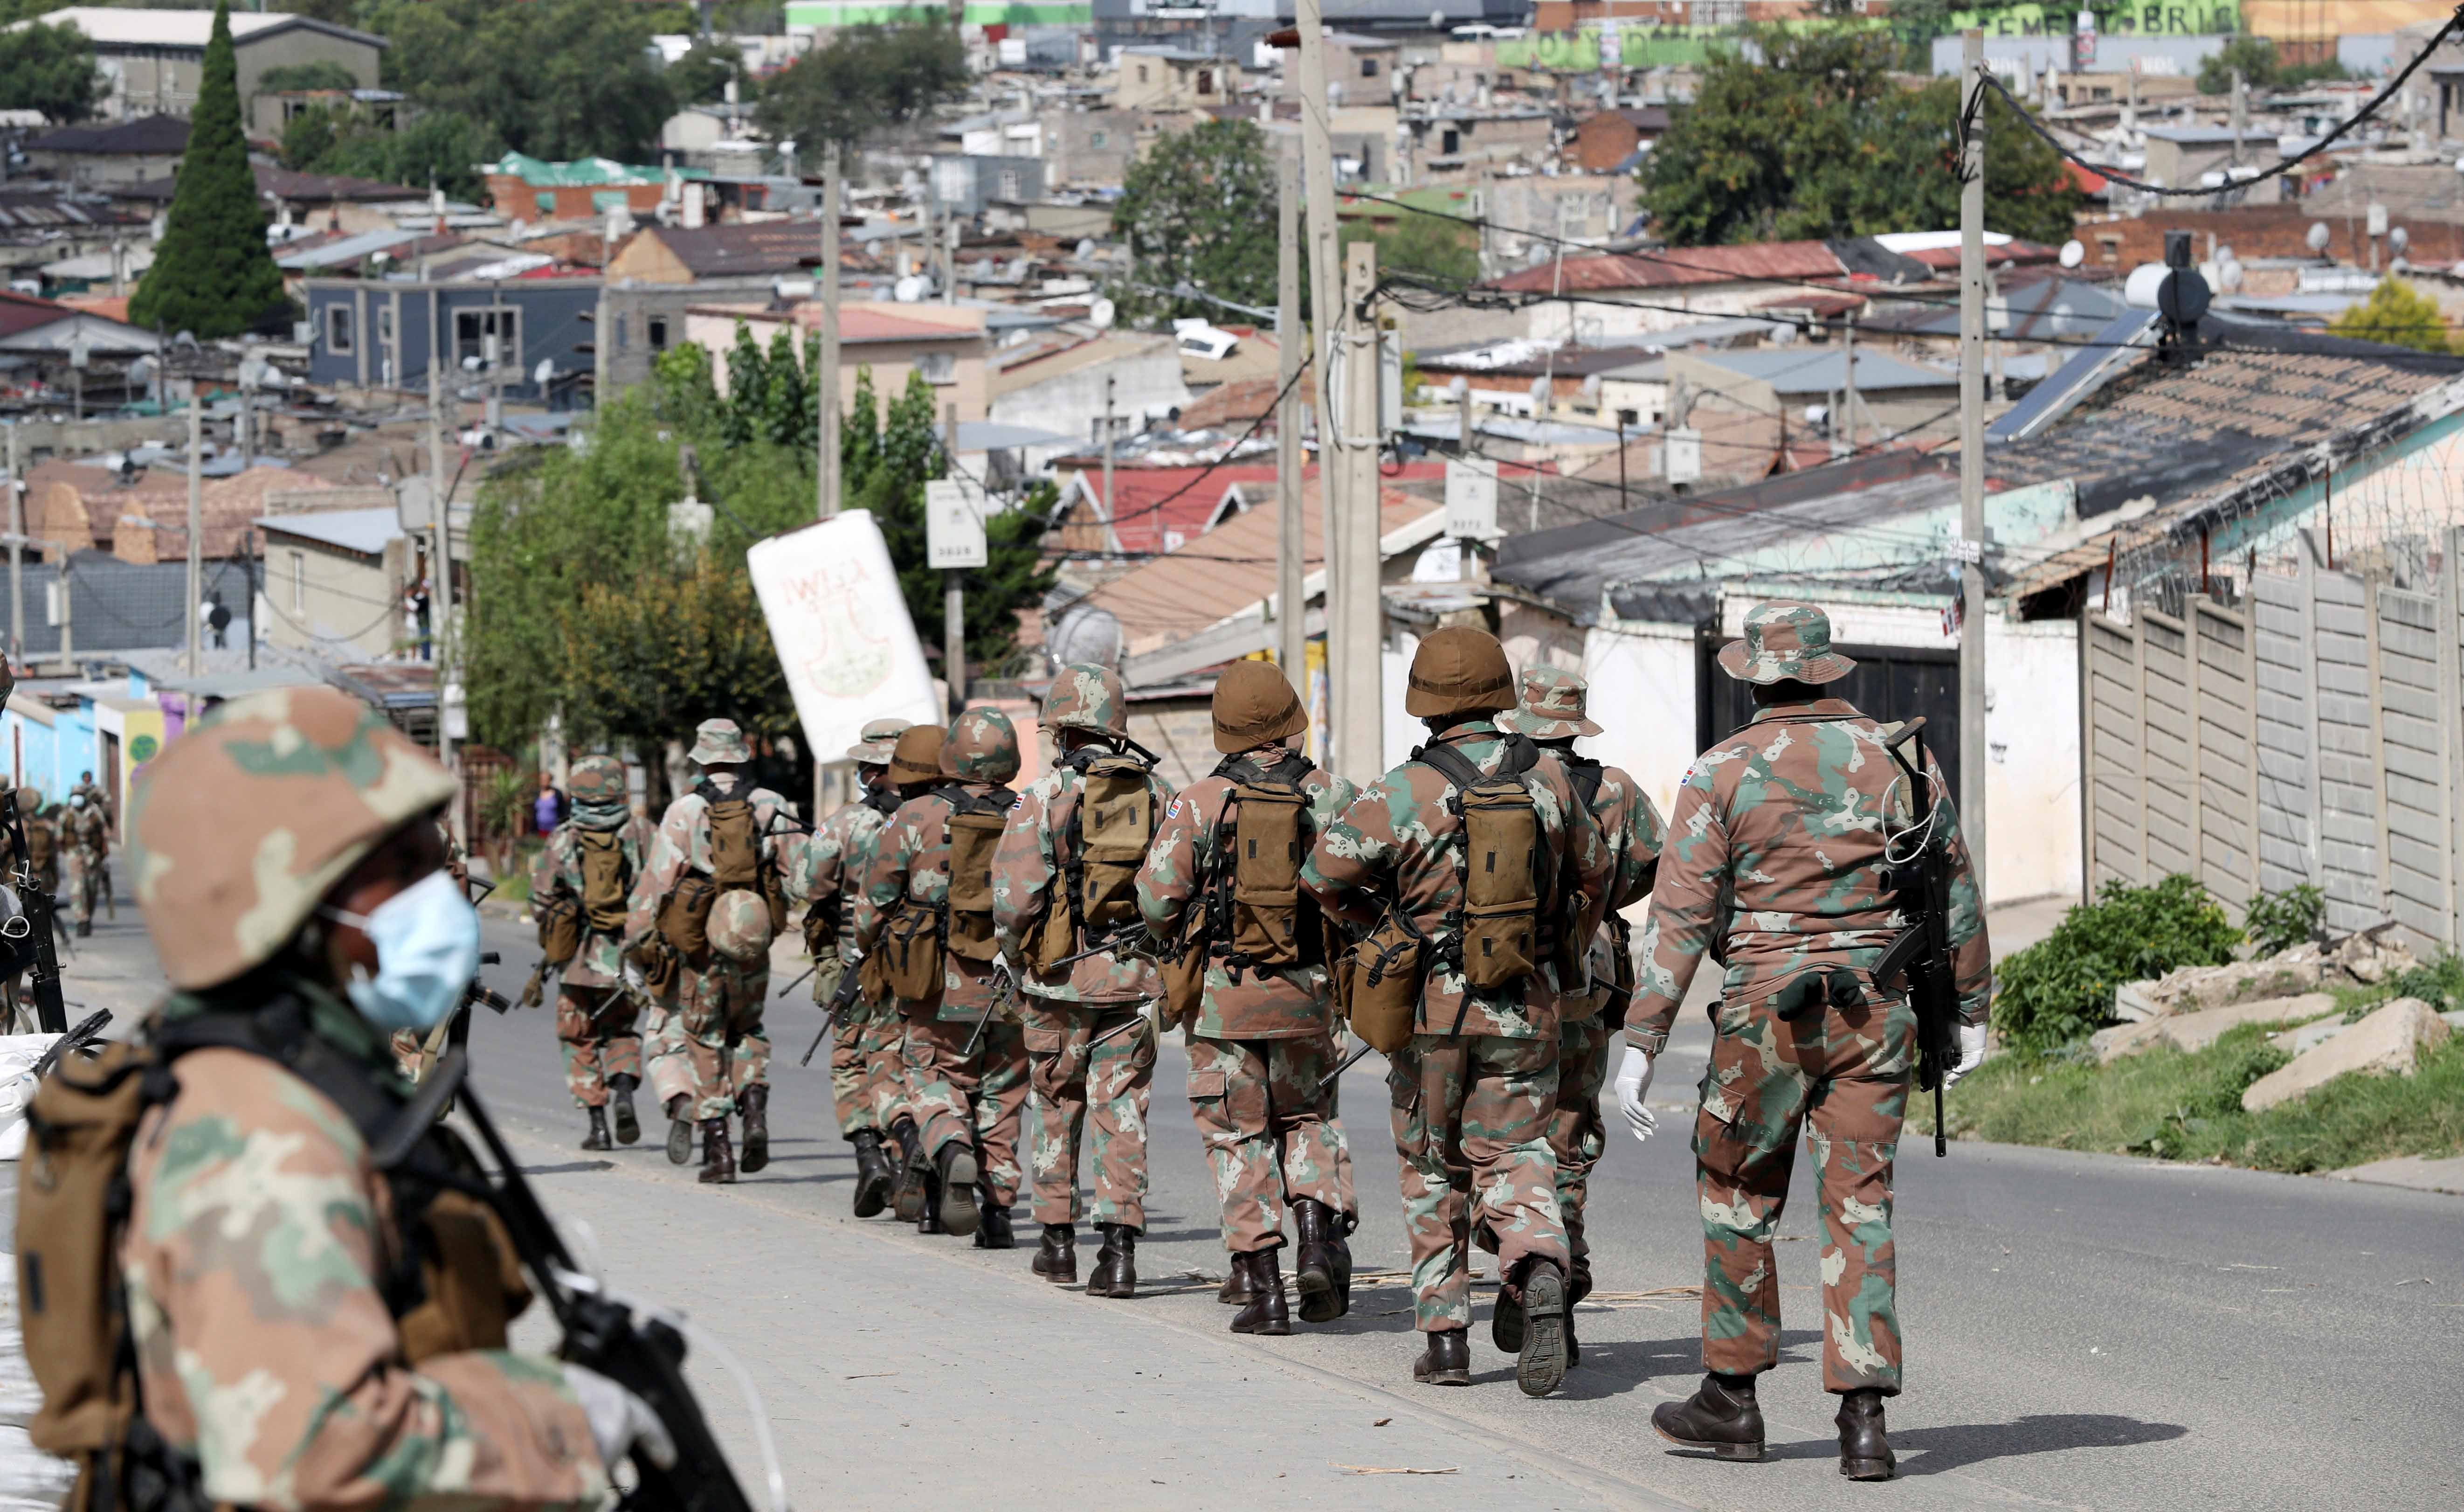 Soldados patrulham as ruas na tentativa de reforçar a quarentena de 21 dias em todo o país, com o objetivo de limitar a propagação da COVID-19, no município de Alexandra, na África do Sul, em 28 de março de 2020.